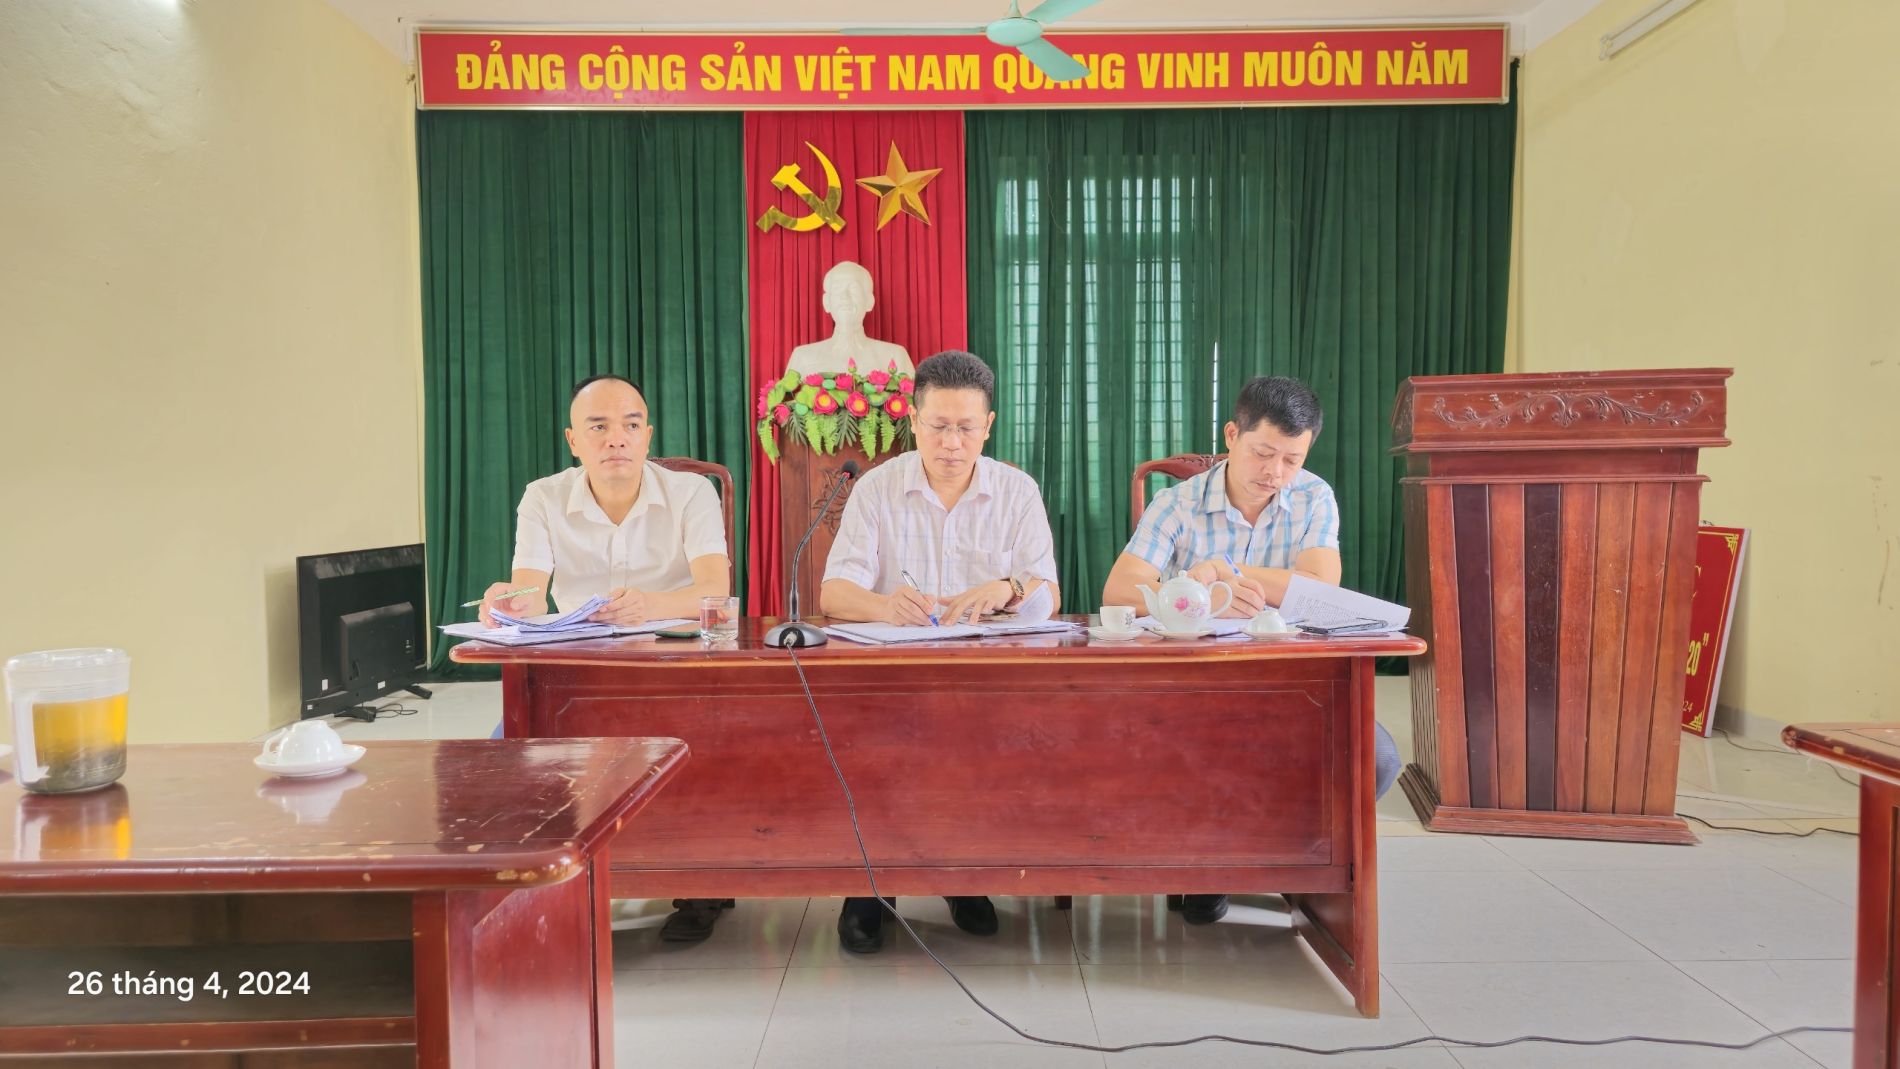 Đảng ủy xã Ninh Giang tổ chức hội nghị giao ban để đánh giá kết quả lãnh đạo thực hiện nhiệm vụ tháng 4 và triển khai nhiệm vụ trọng tâm công tác tháng 5 năm 2024